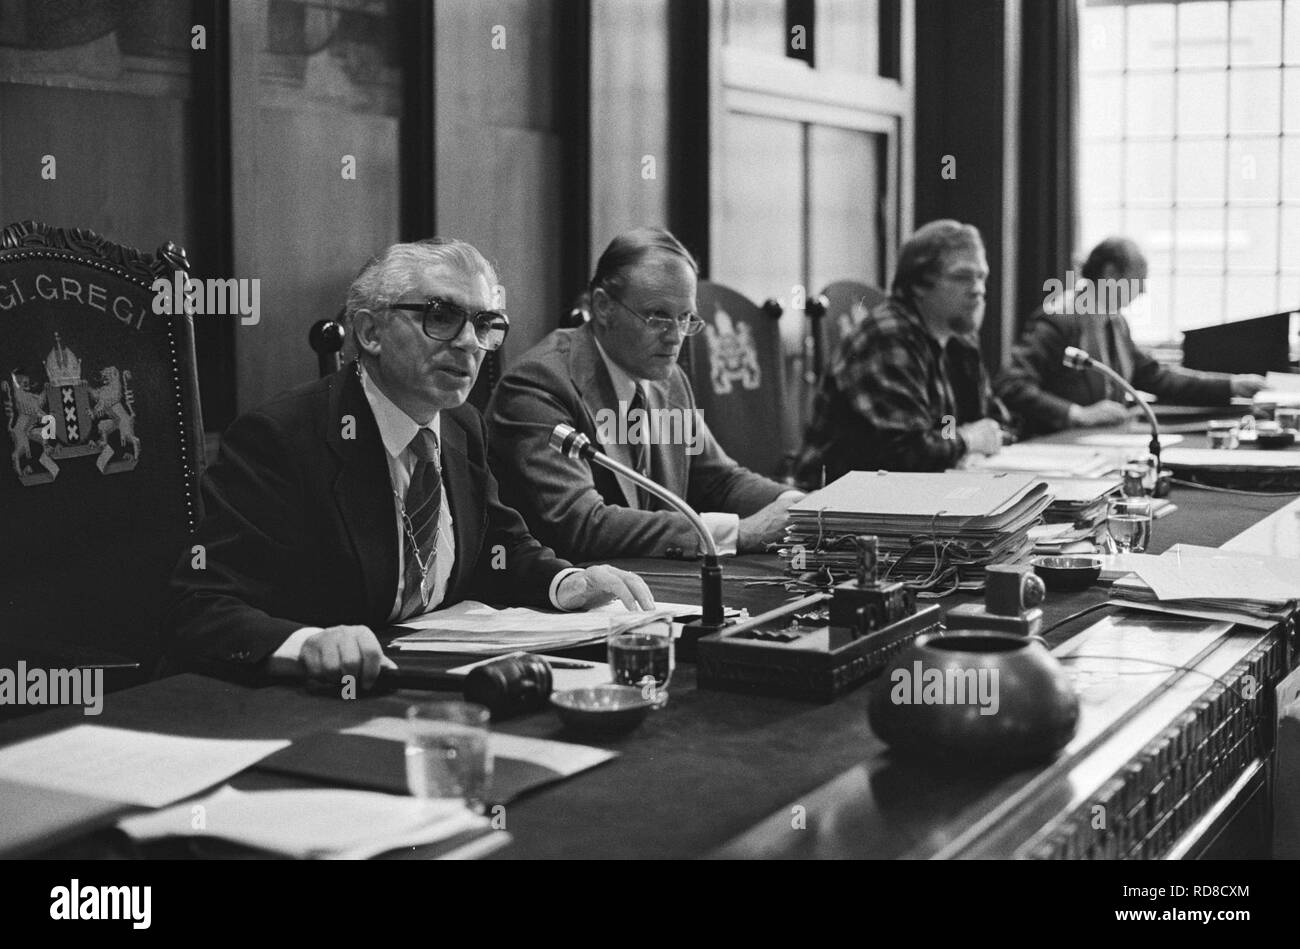 Amsterdamse Gemeenteraad debatteerde over aankoop kraakpand De Grote Keyser , do, Bestanddeelnr 931-1004. Stock Photo